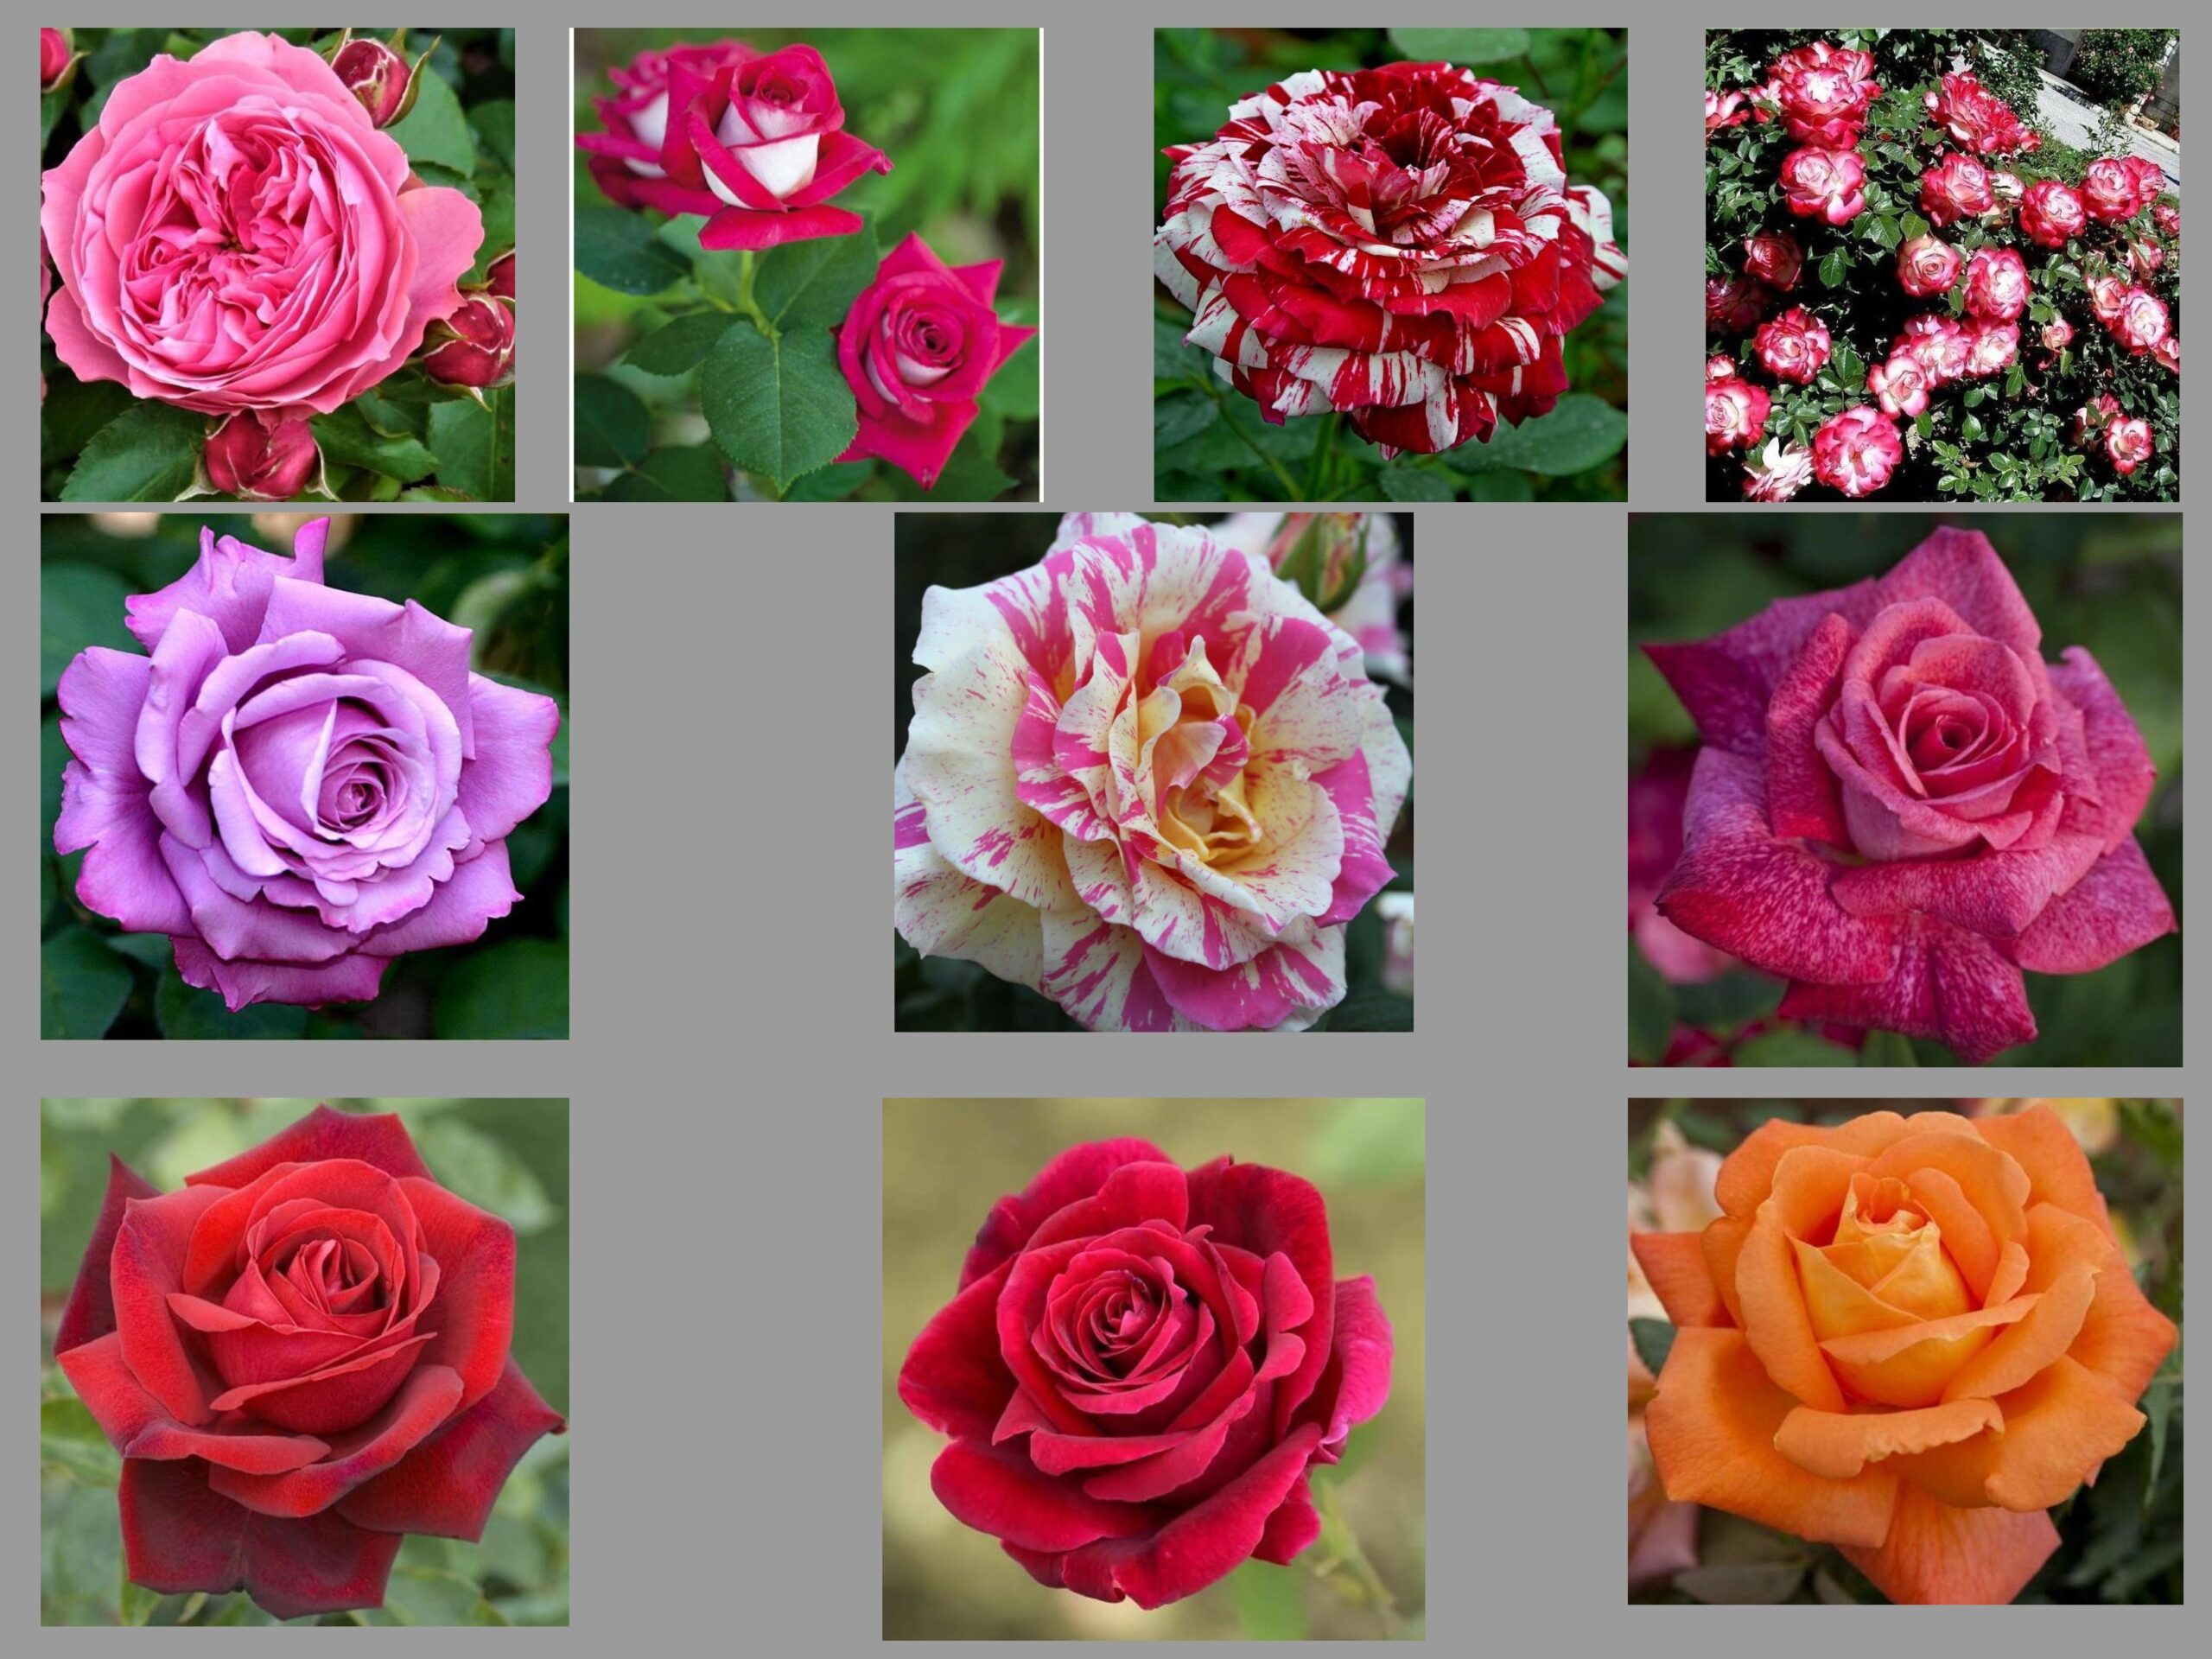 Comunicat de presă - Top 10 trandafiri numiți după persoane celebre